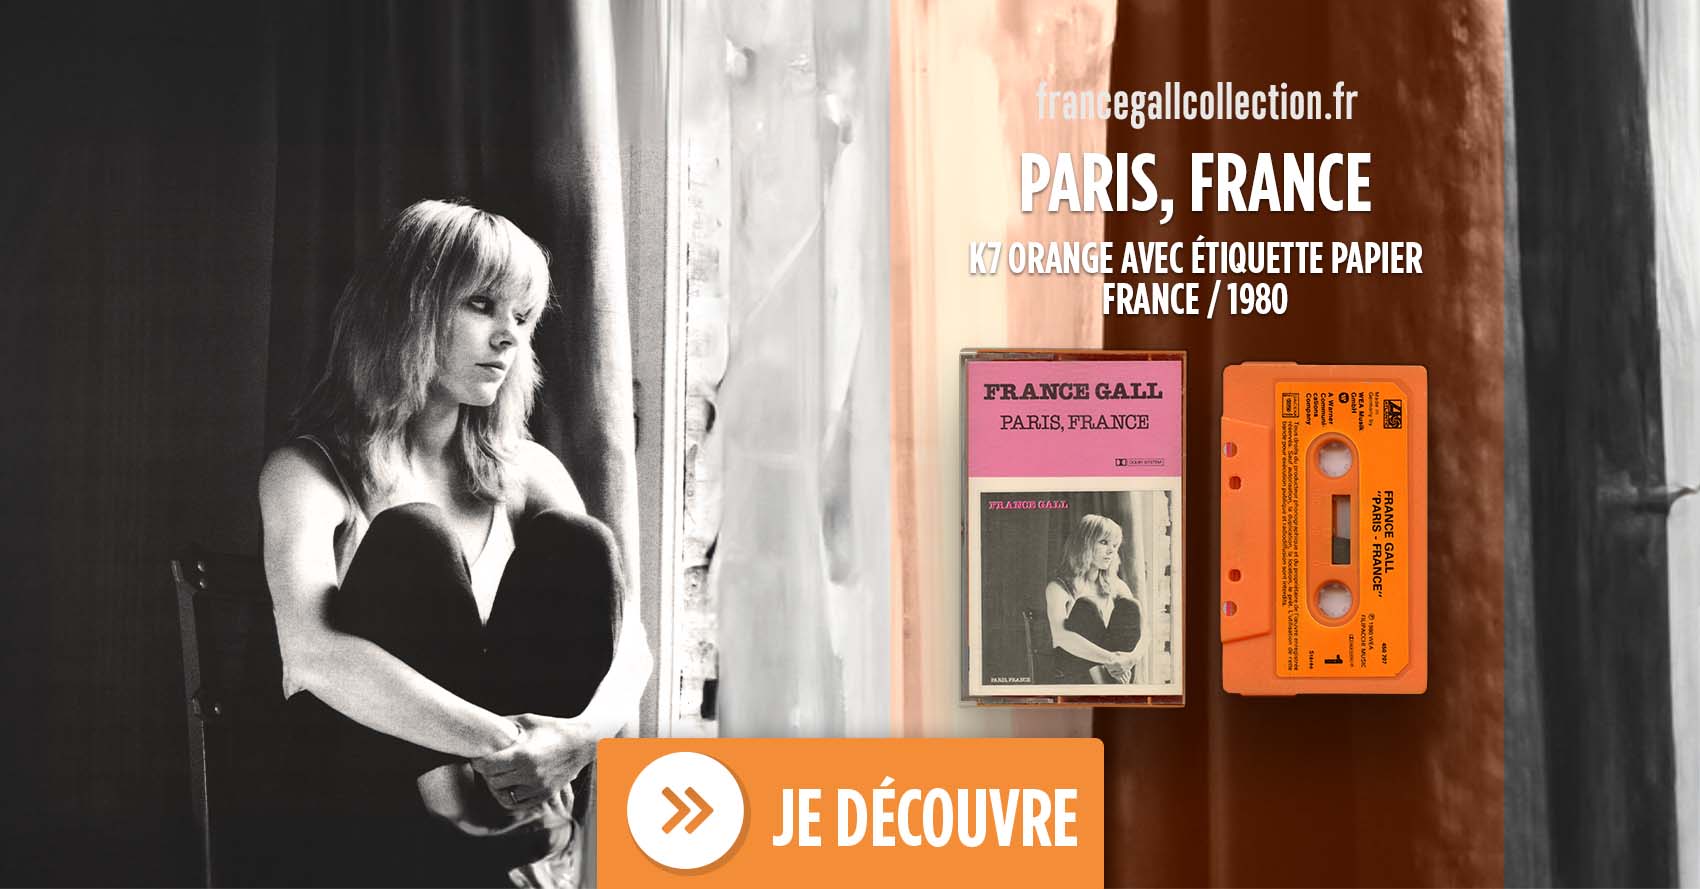 Edition au format cassette de couleur orange, avec étiquette en papier, du 19 mai 1980 de Paris, France, troisième album studio que Michel Berger a produit pour France Gall.